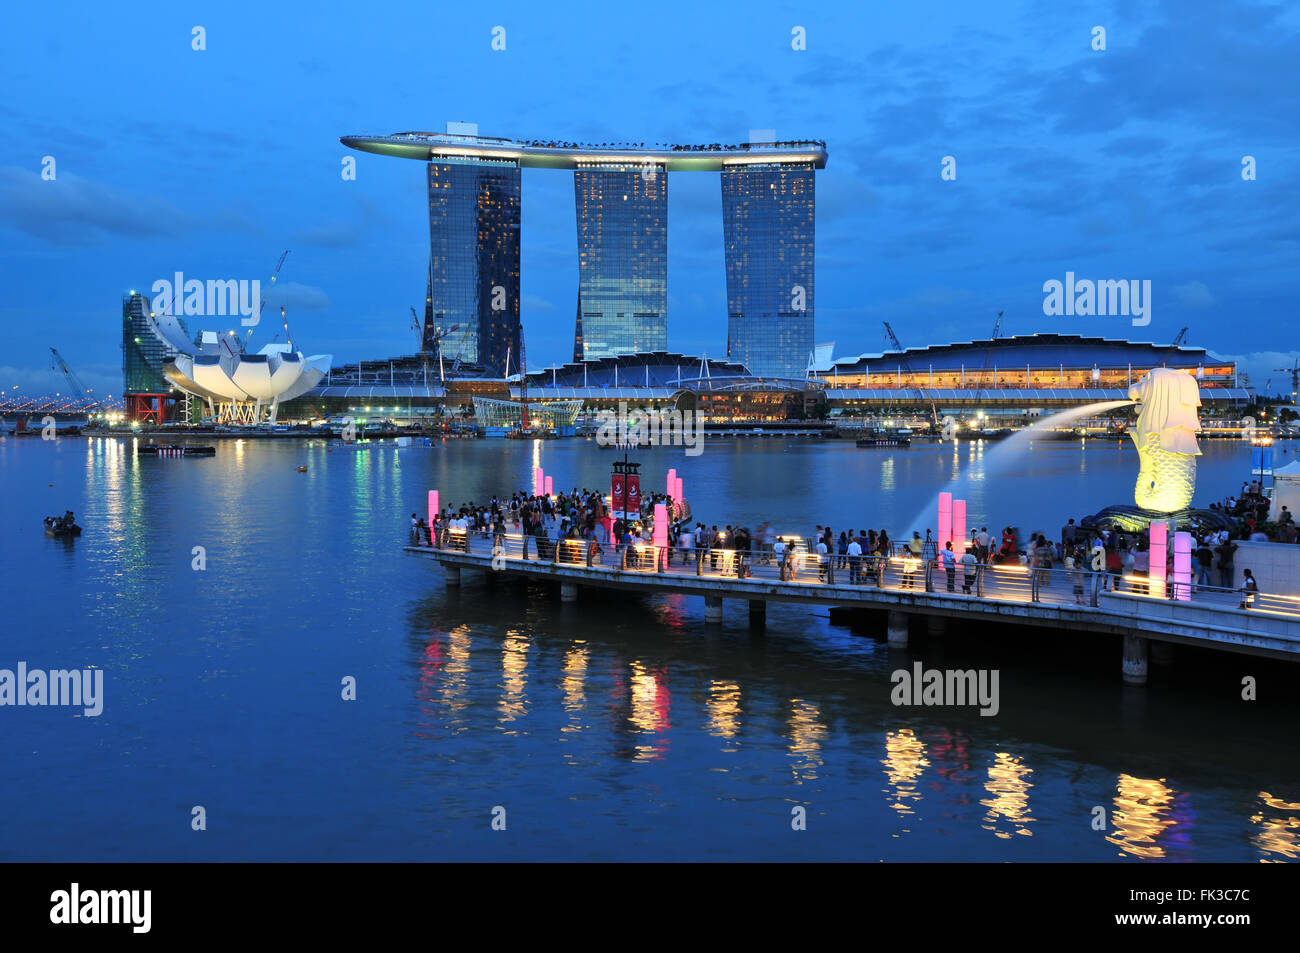 Singapur-Juli 17: 55 Stockwerke hoch, US$ 6,3 Milliarden Marina Bay Sands Hotel dominiert die Skyline an der Marina Bay 17.07.10 Stockfoto